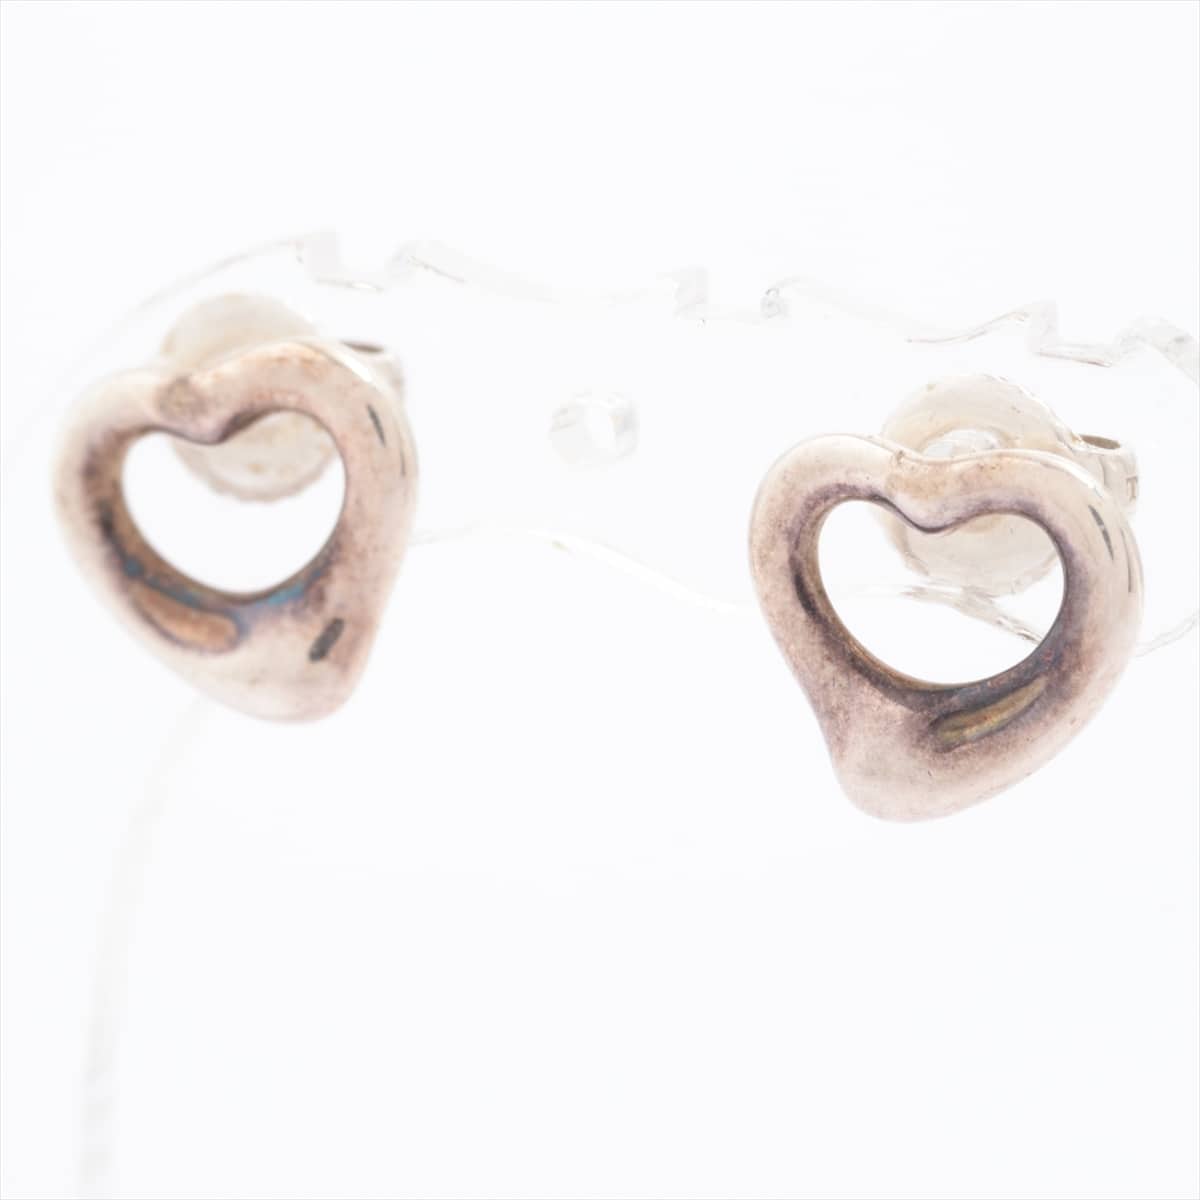 Tiffany Open Heart Piercing jewelry (for both ears) 925 2.3g Silver